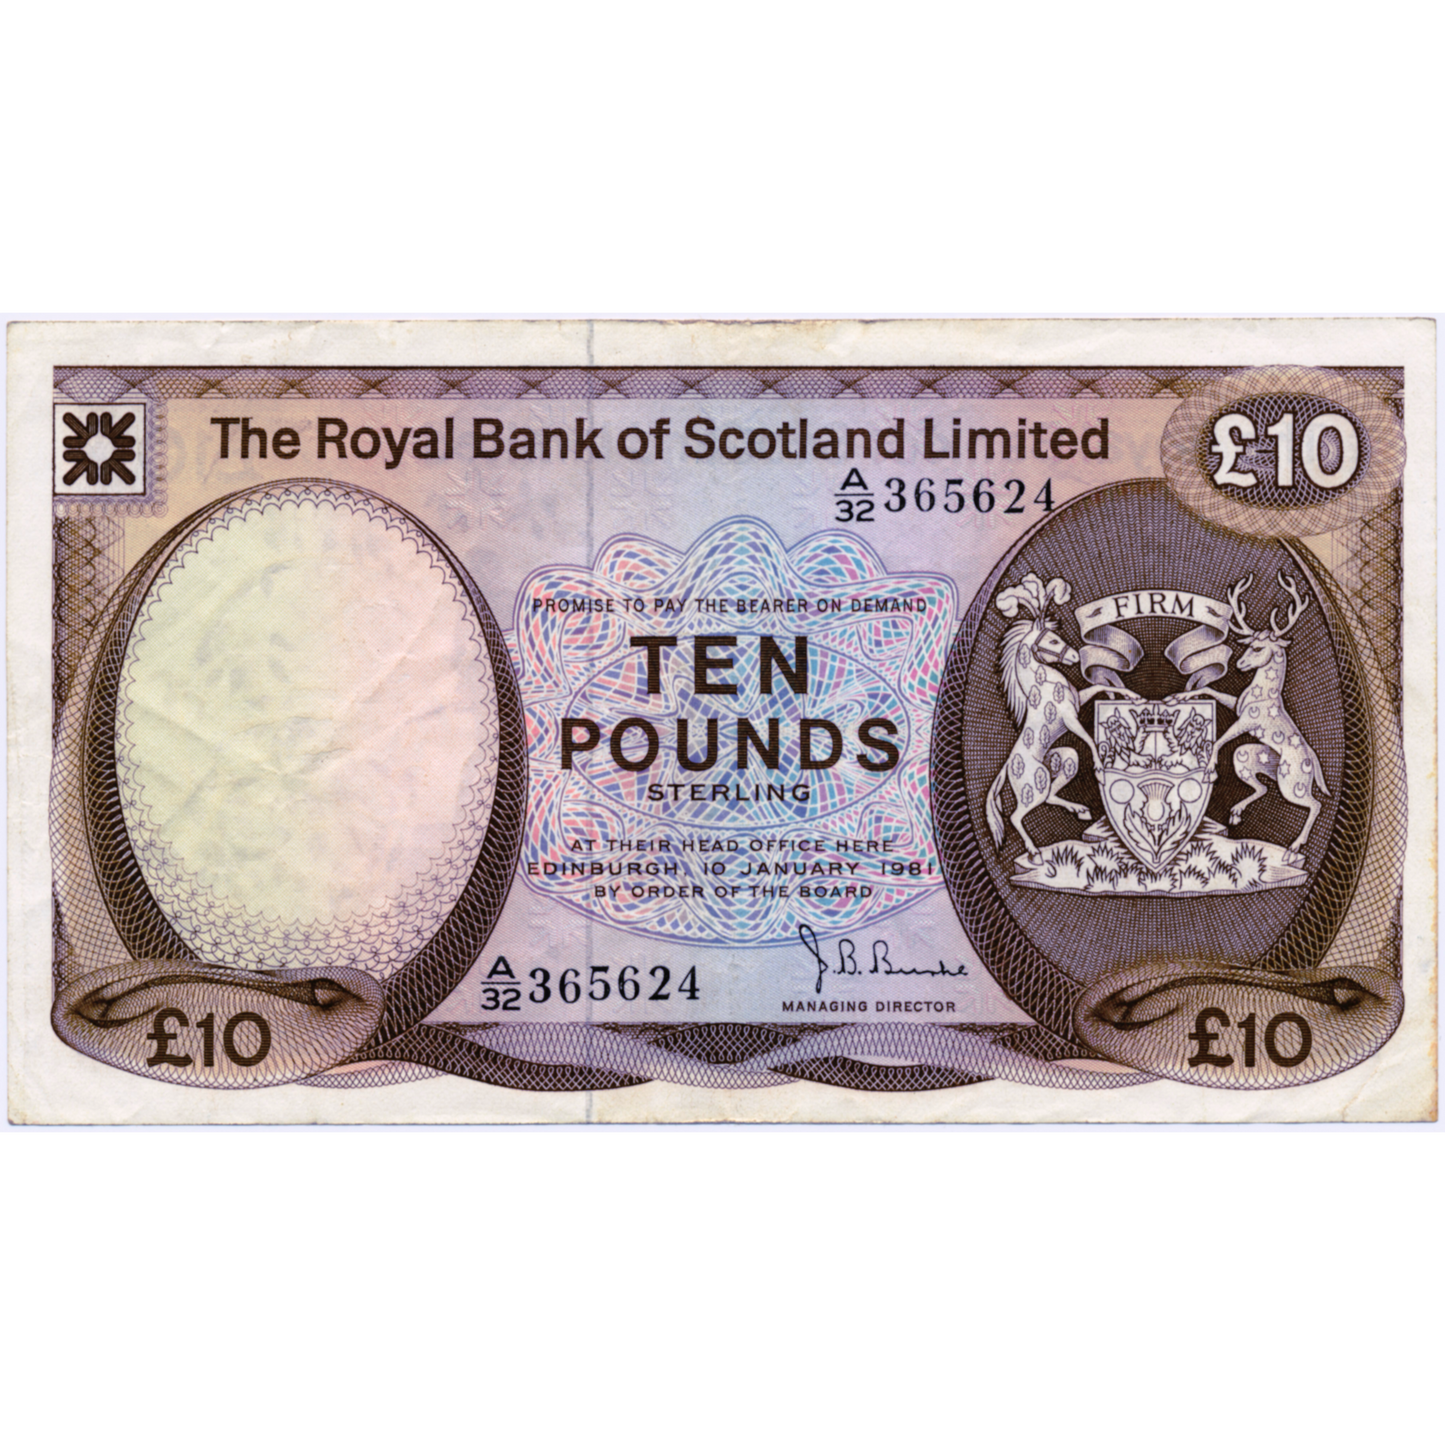 SCOTLAND P.338 SC819 1981 Royal Bank of Scotland £10 GVF A/22